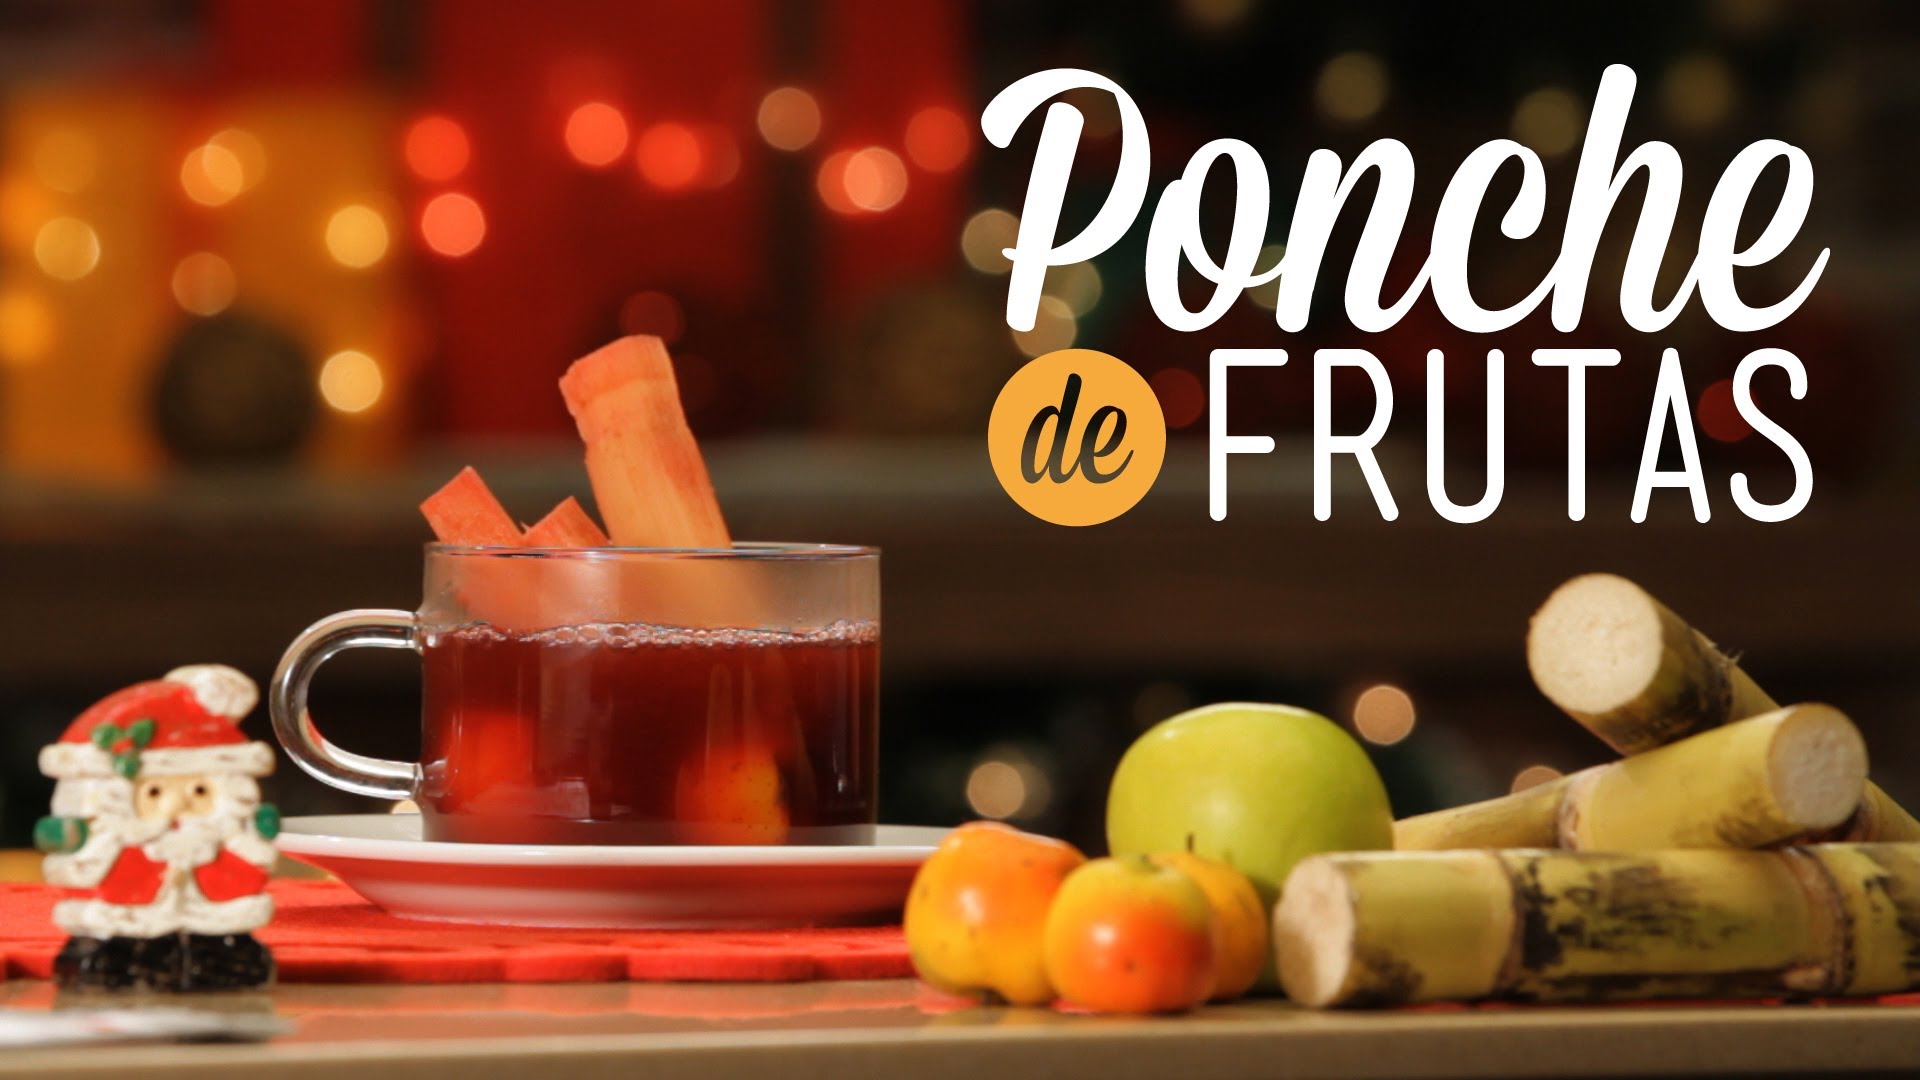 Receta del Ponche de frutas Navideño y datos nutricionales.